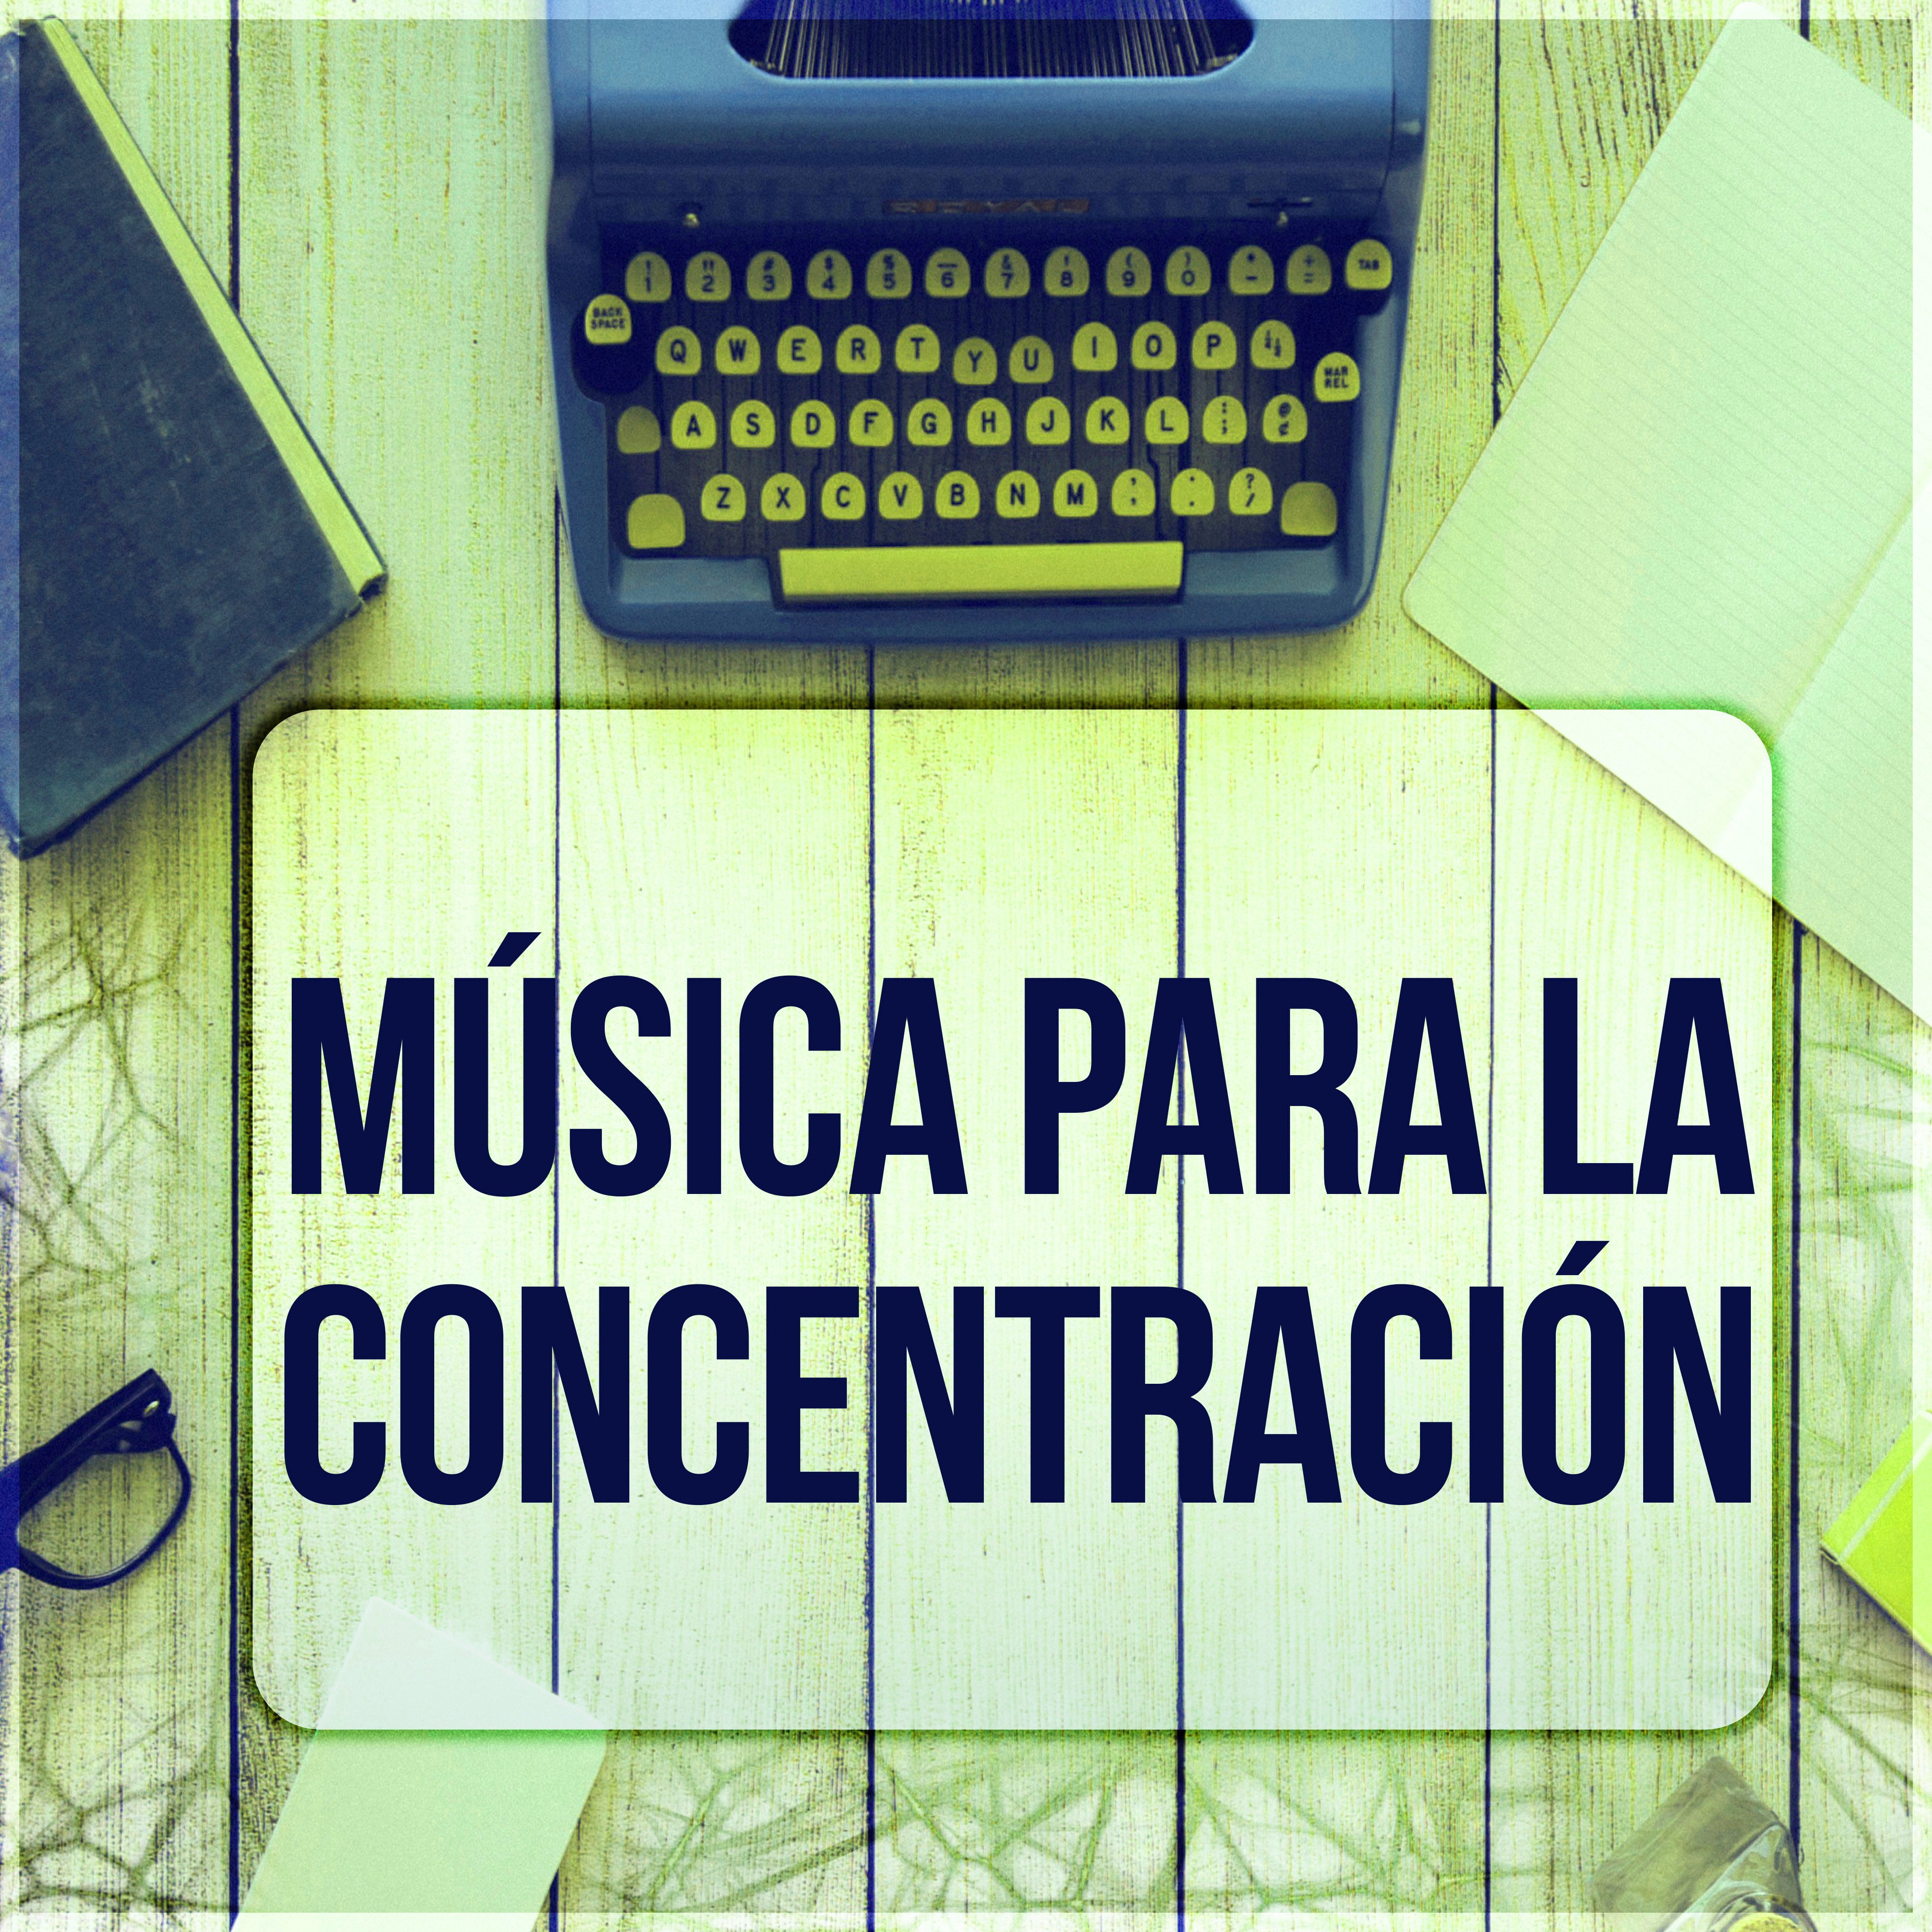 Música para la Concentración - Música para Estudíar y Concentrarse, Examen, Relajacion, Tranquilidad